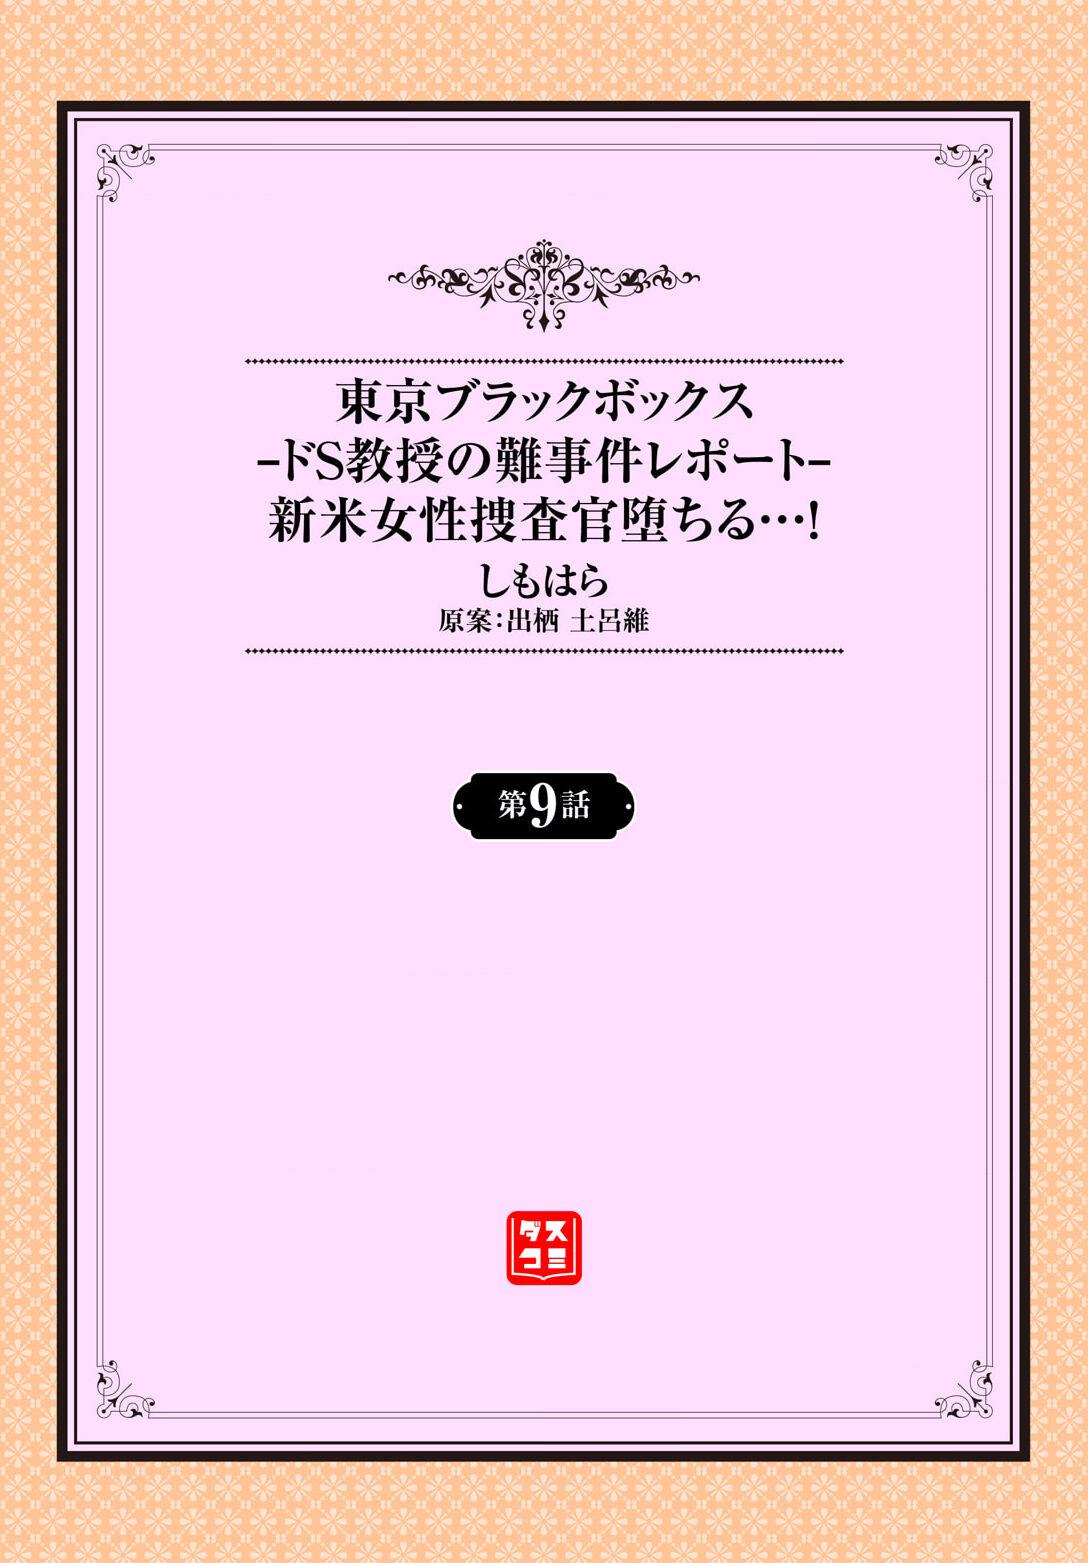 From [Shimohara] Tokyo Black Box ~Do-S Kyoujyu no Nanjiken Report~ case.9 Funk - Picture 2